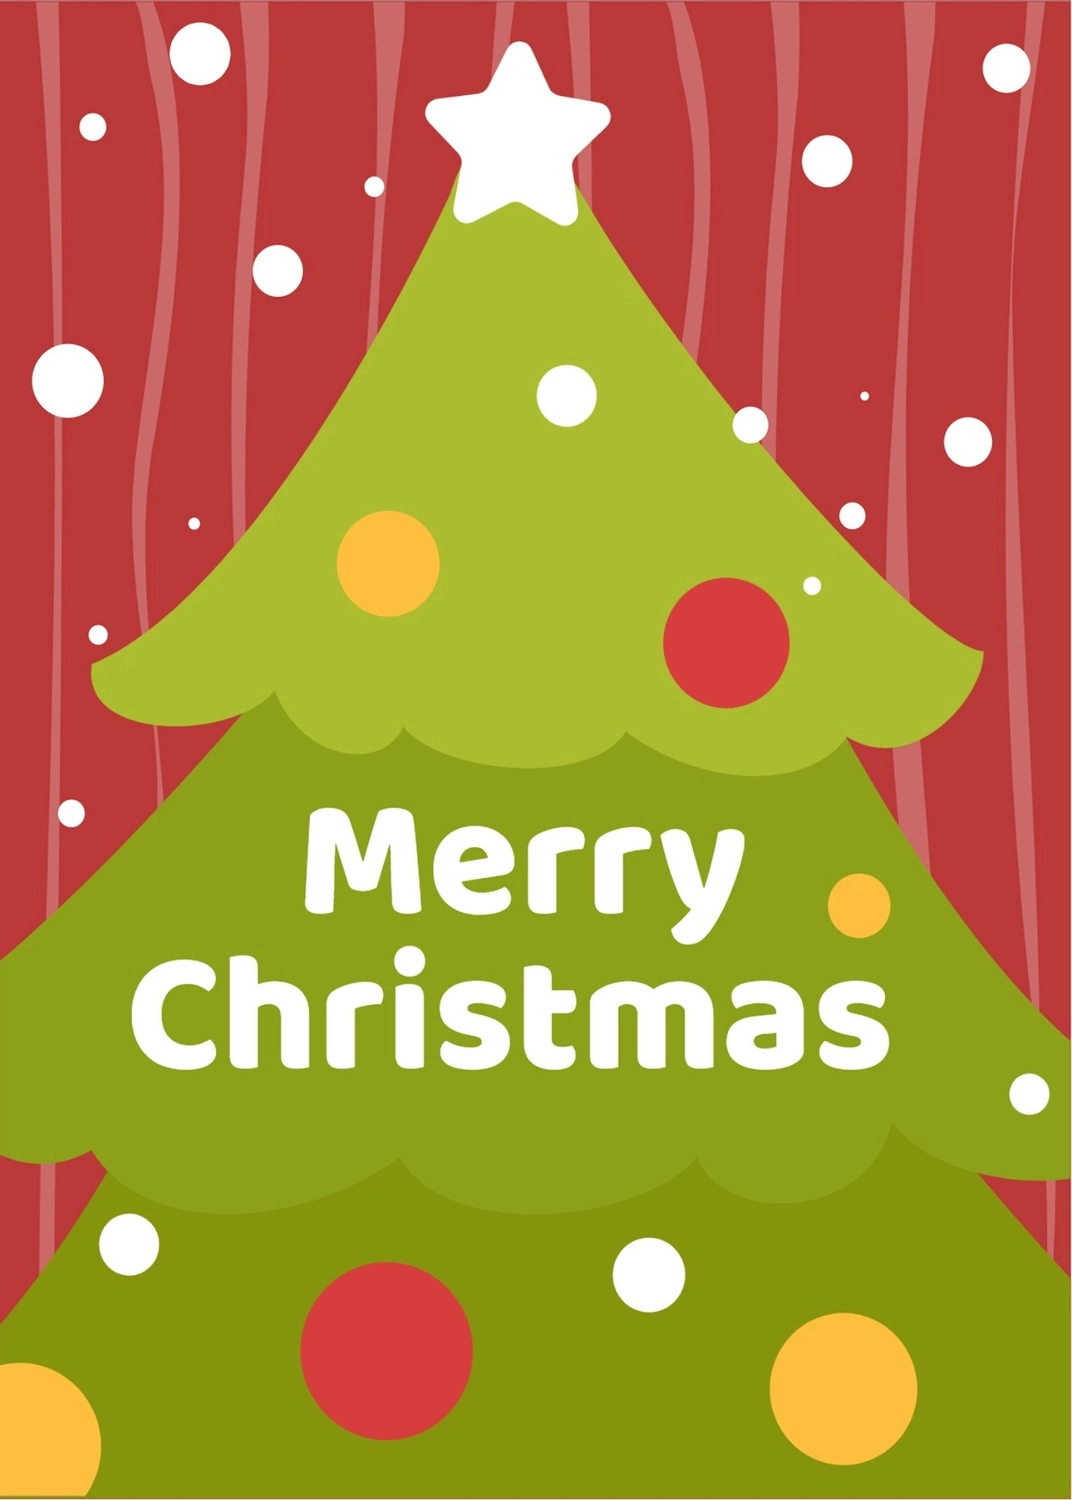 クリスマスツリー, クリスマス, クリスマスカード, 作成, メッセージカードテンプレート